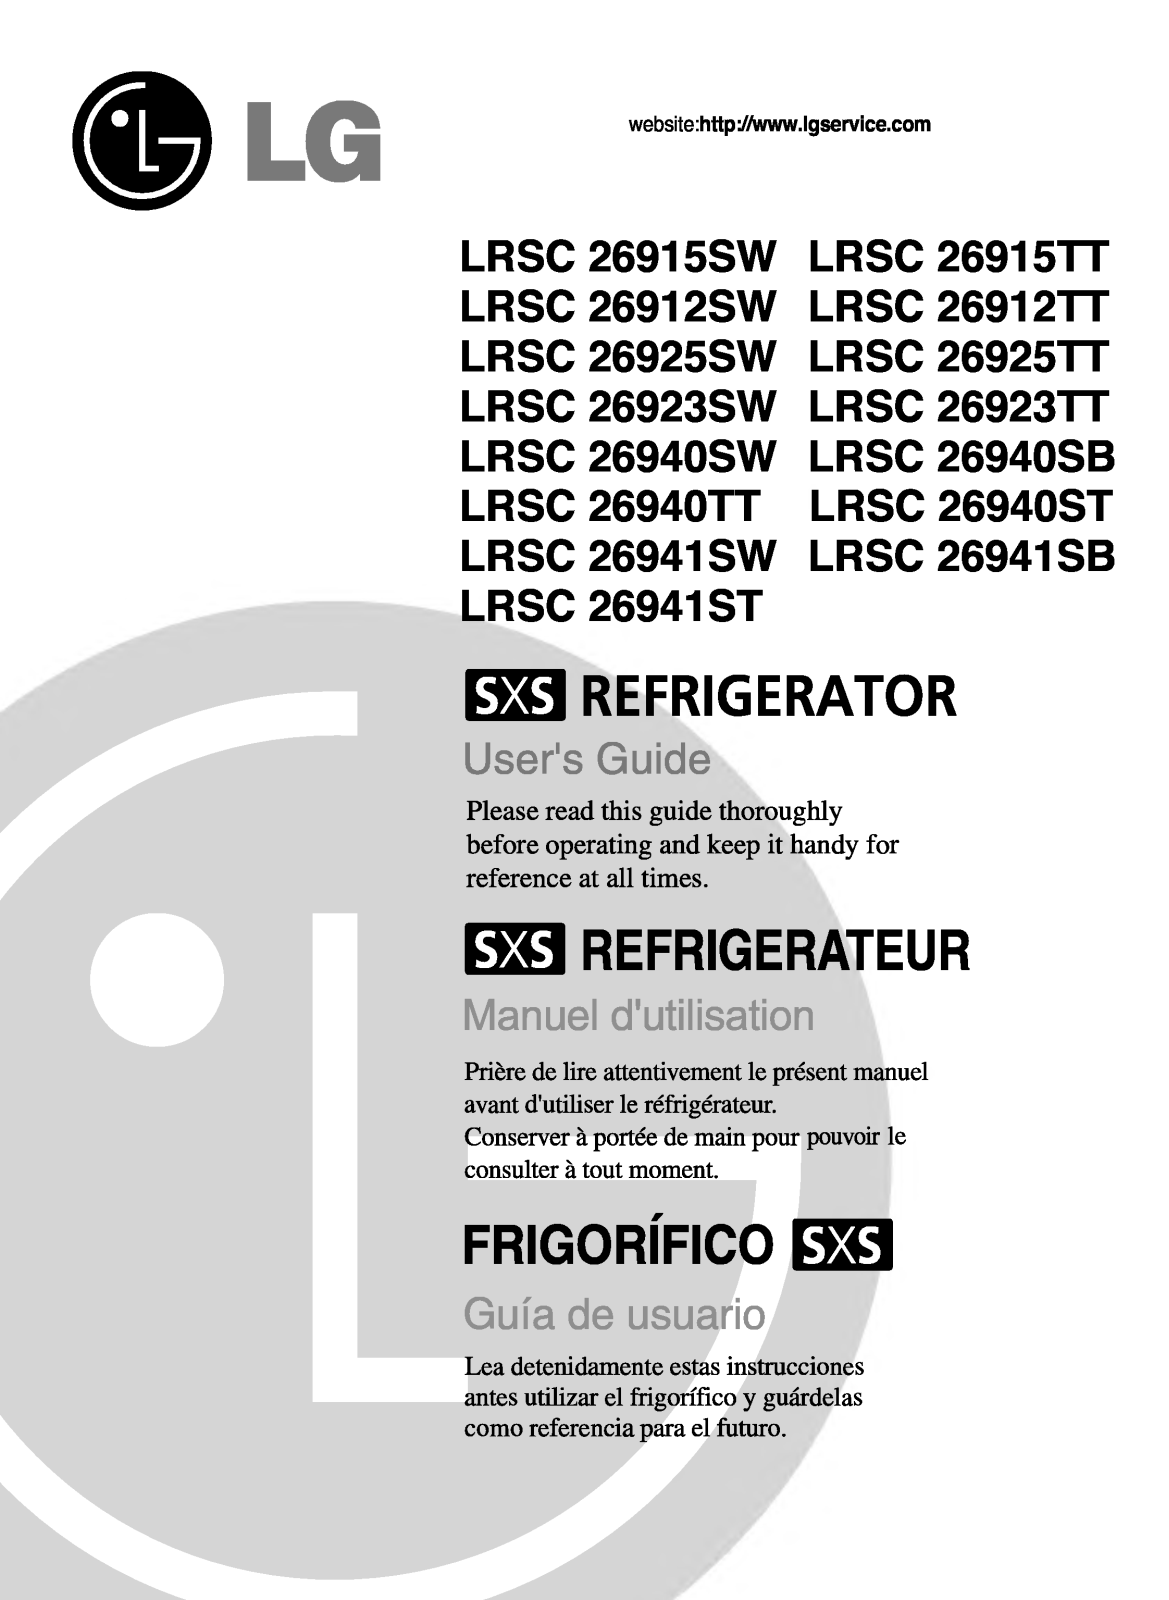 LG LRSC26915SW, LRSC26940SW, LRSC26912SW, LRSC26941SW Manual